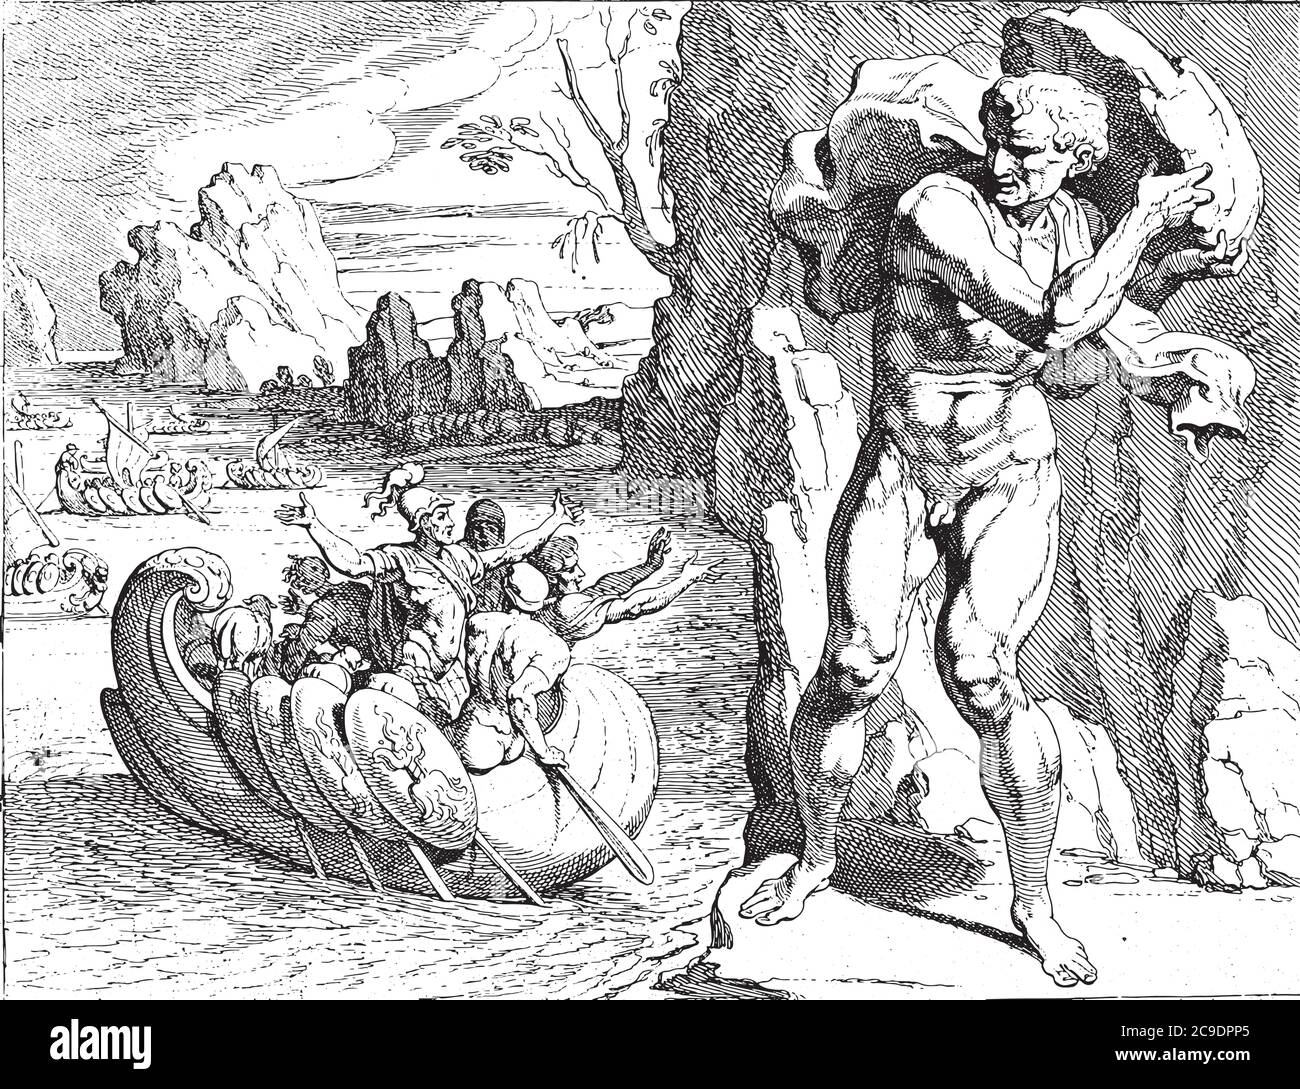 Polyphemus jette un rocher au navire d'Odysseus, le géant Polyphemus jette un rocher au navire de départ d'Odysseus, gravure ancienne. Illustration de Vecteur